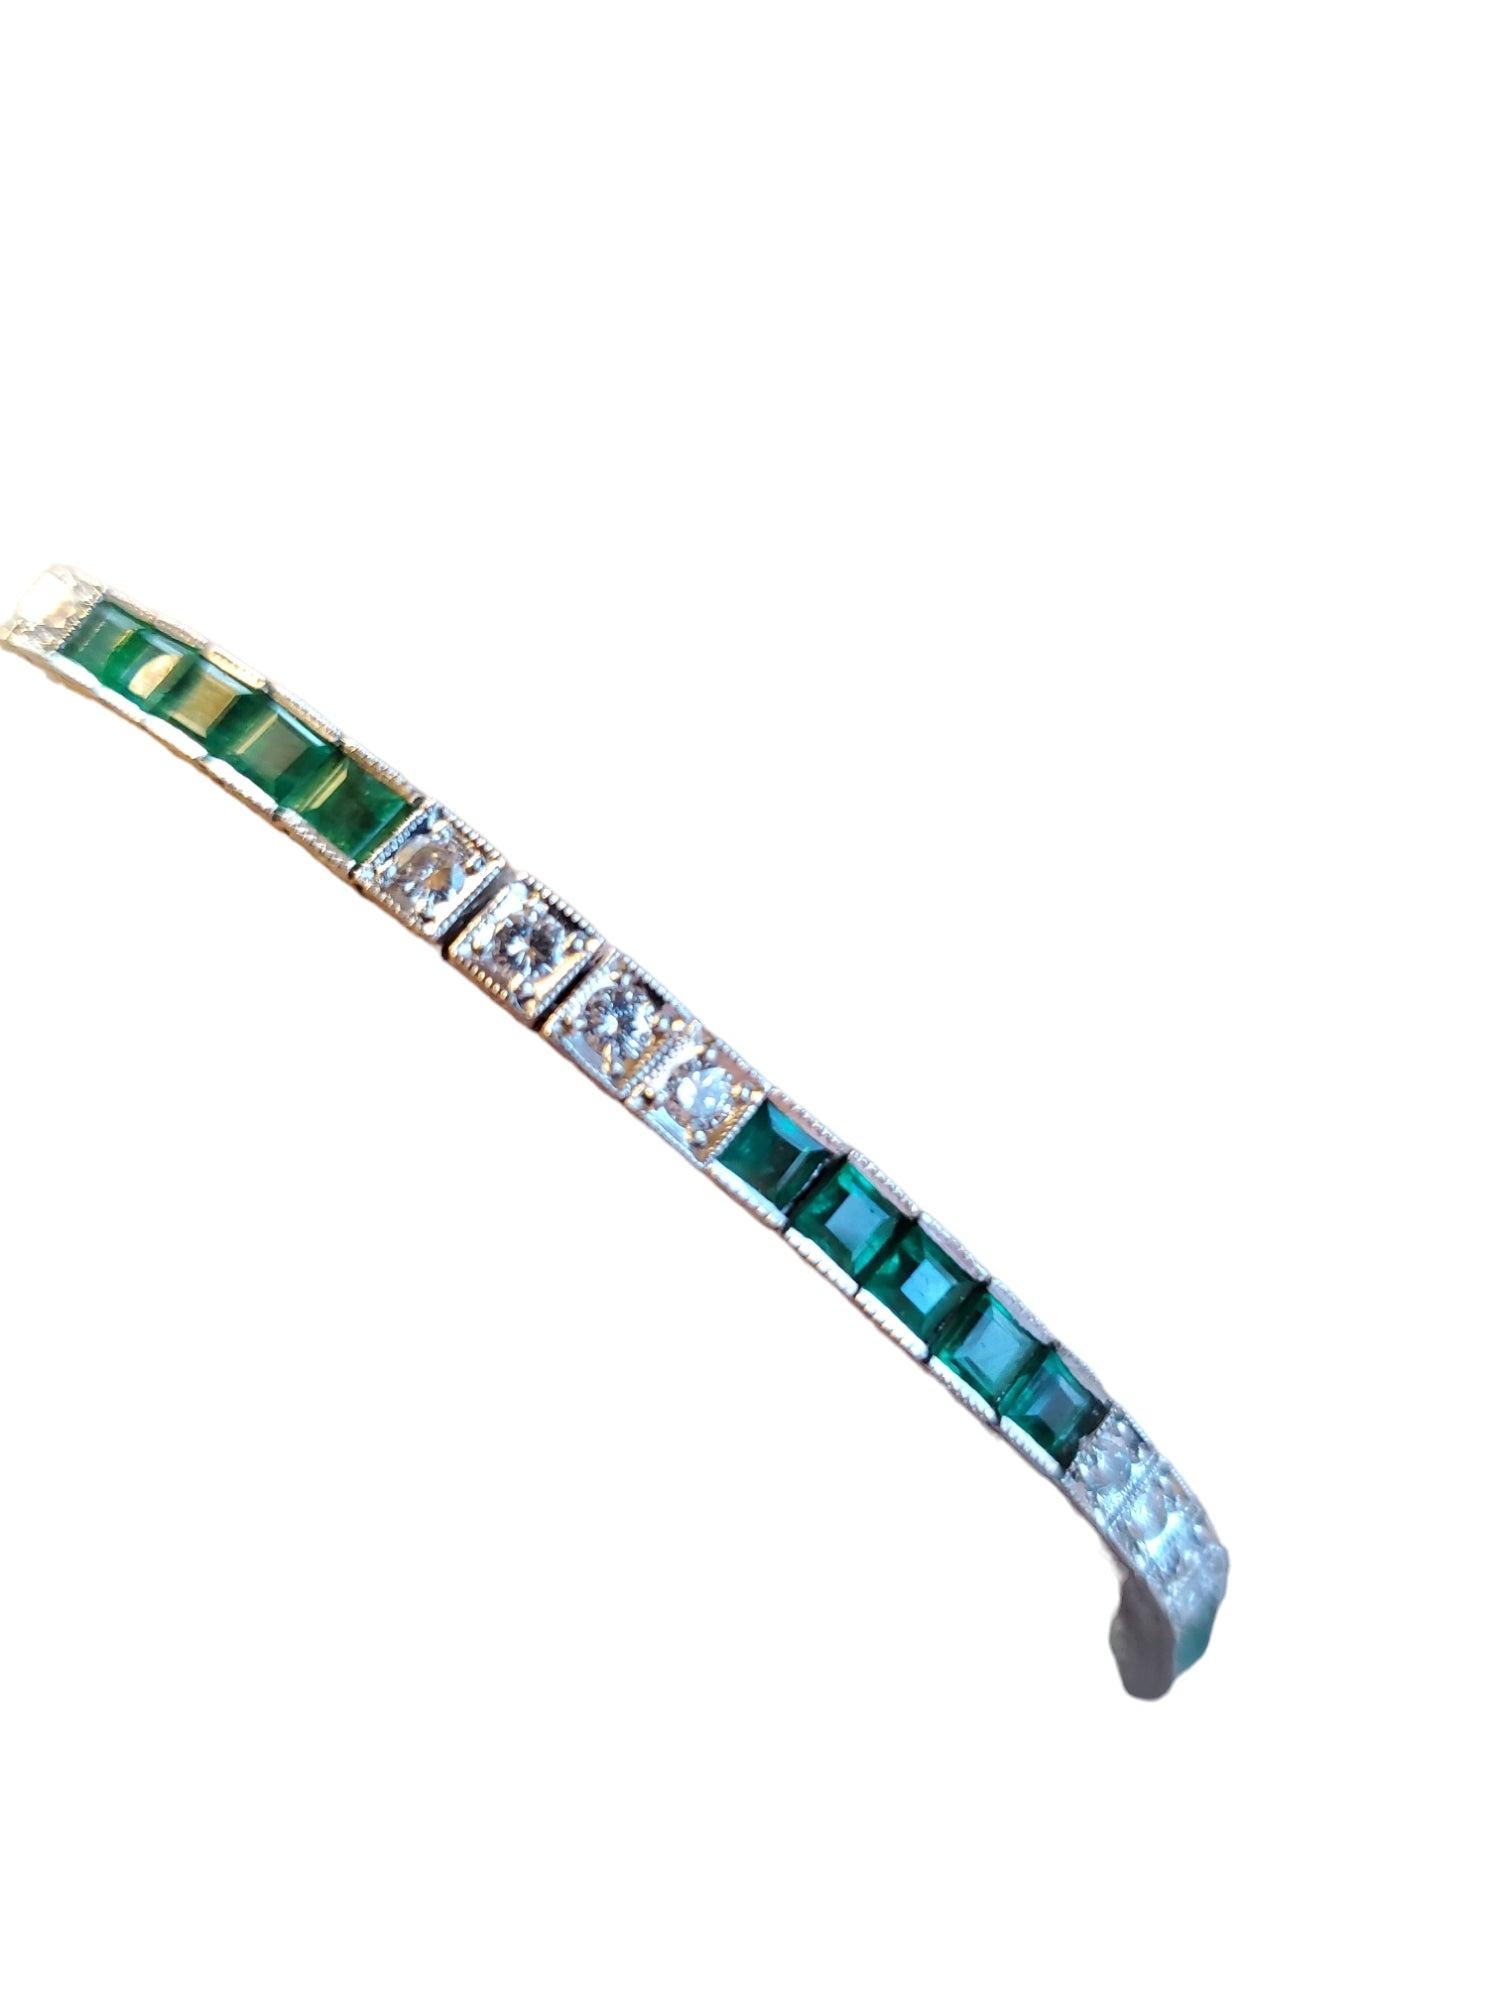 Aufgelistet ist eine Mitte des Jahrhunderts gemacht Art Deco-Stil Platin Diamant und natürlichen Smaragd Armband. Es gibt ungefähr .96 Karat farblose bis fast farblose F-H Farbe VS runde Brillanten und grüne natürliche Smaragde. Das Armband ist